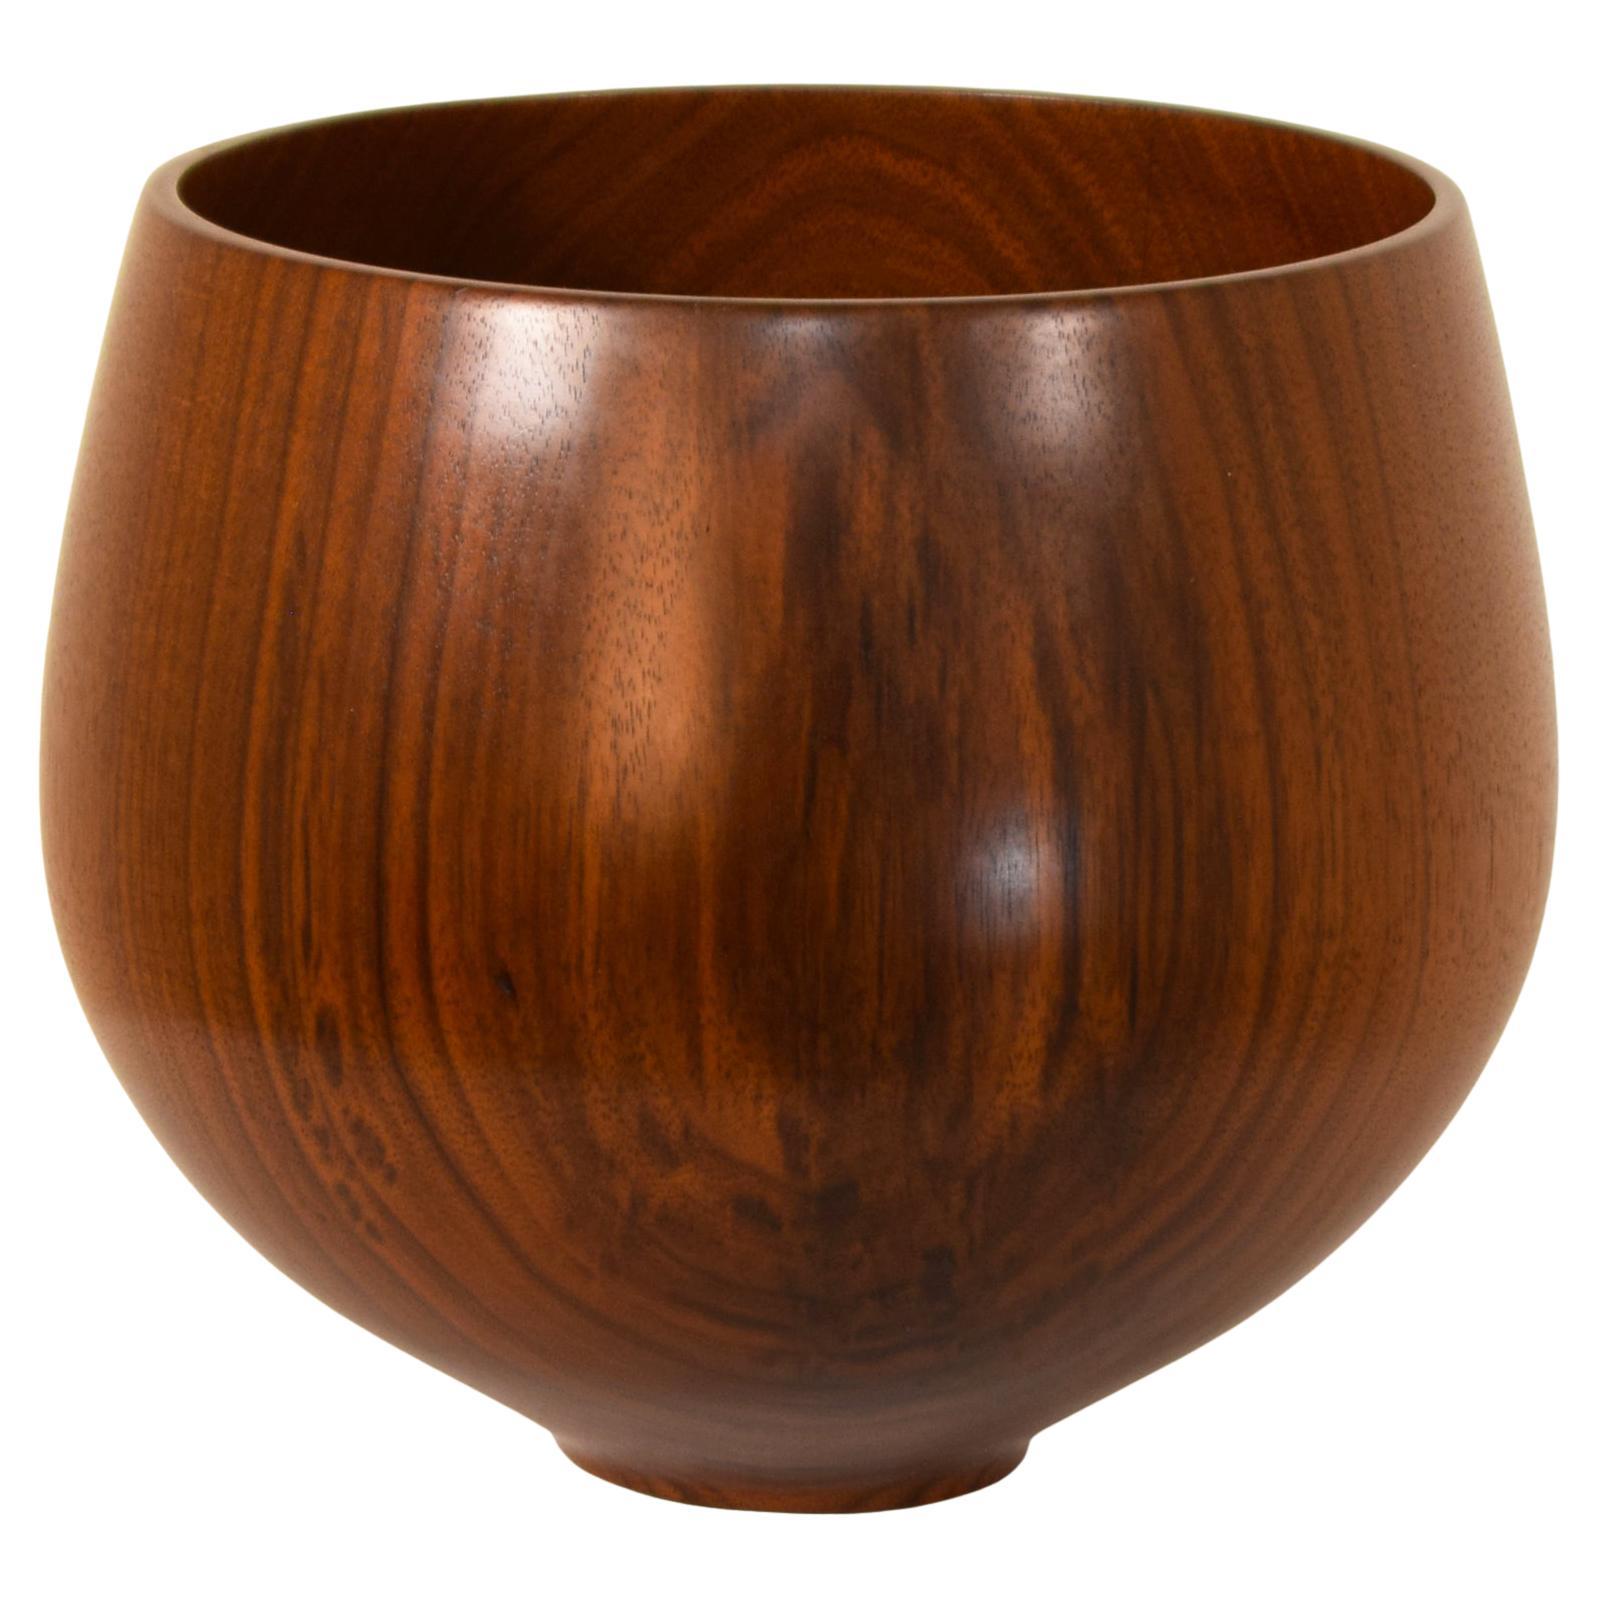 Unique Wood Turned Maple live natural edge goblet vase vessel fantastic unbelievable grain 1880